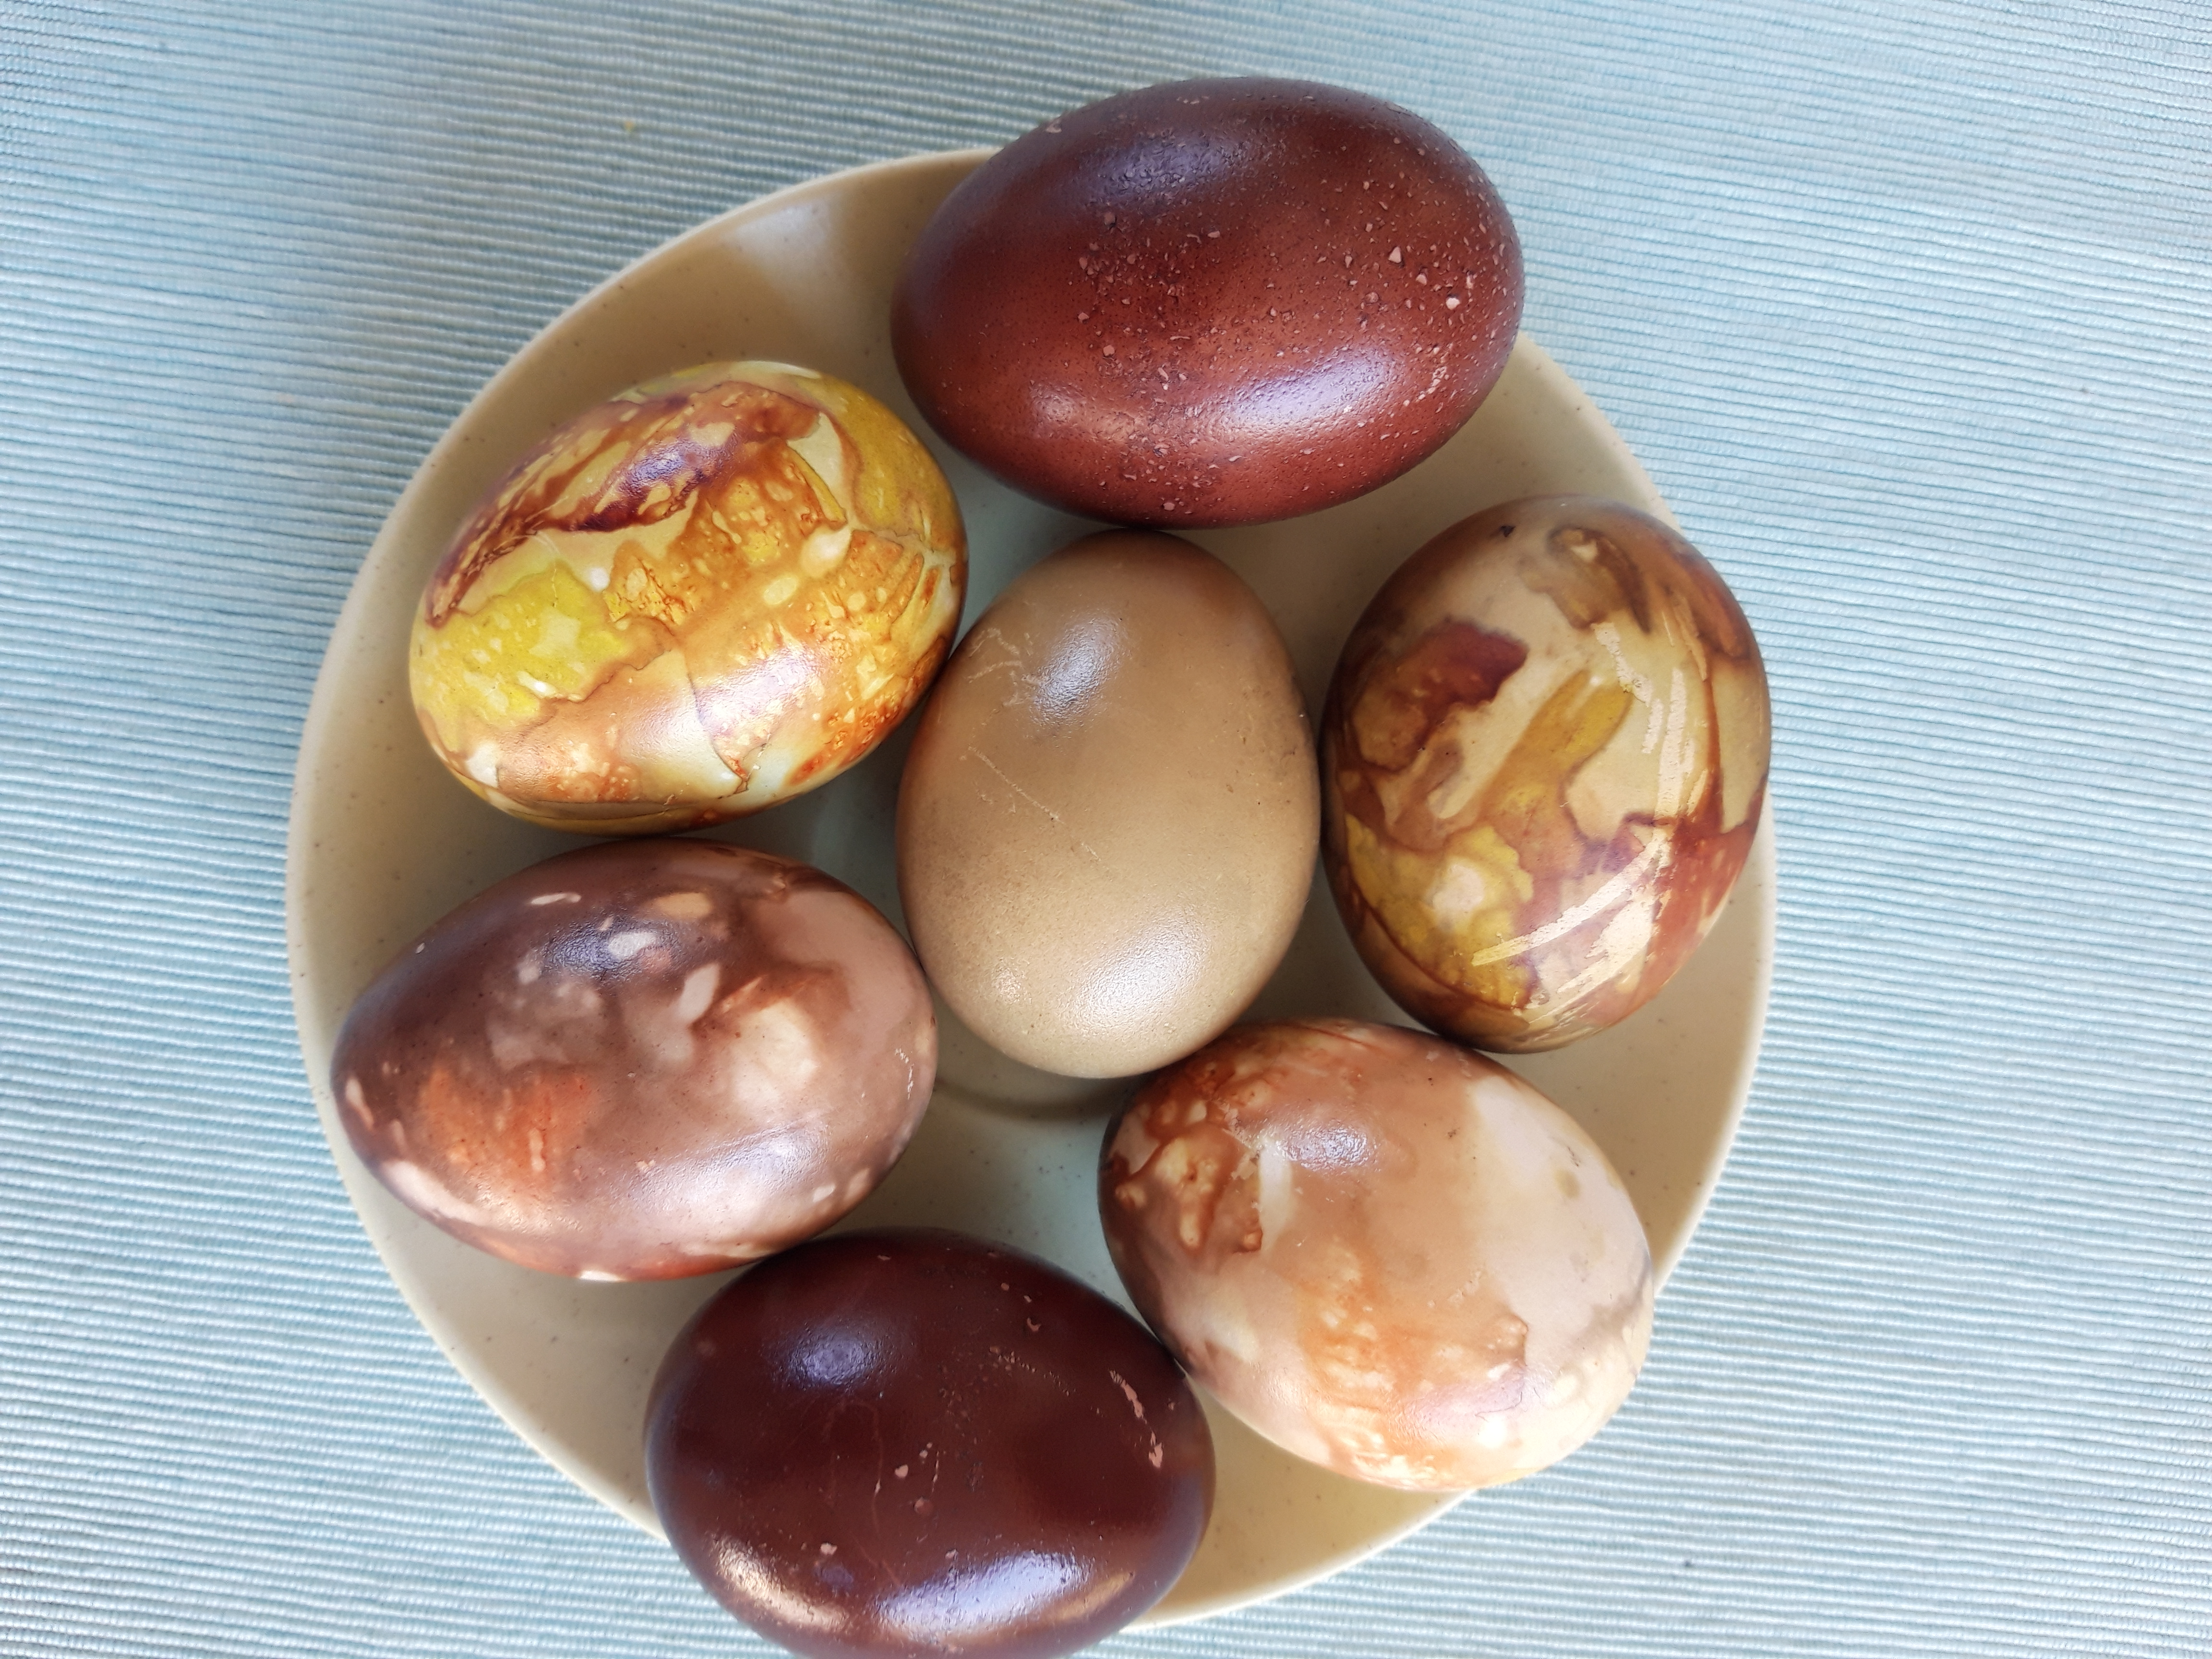 Ouă de Paşti. Experiment cu pigmenţi naturali